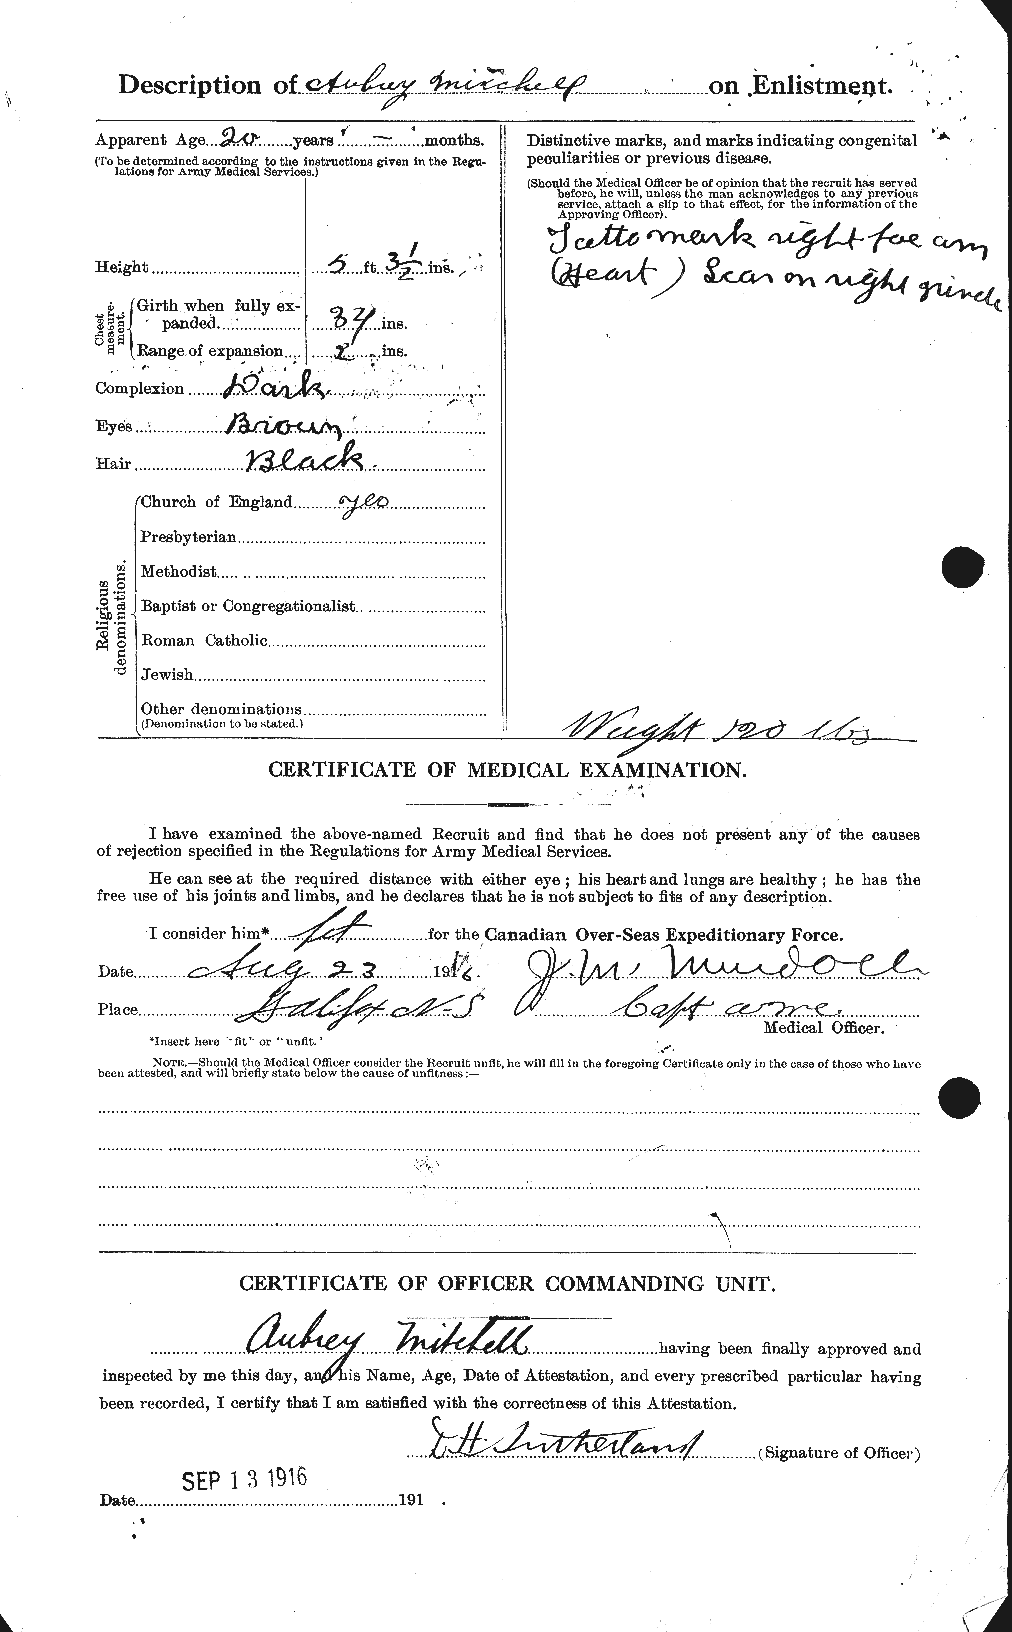 Dossiers du Personnel de la Première Guerre mondiale - CEC 496077b